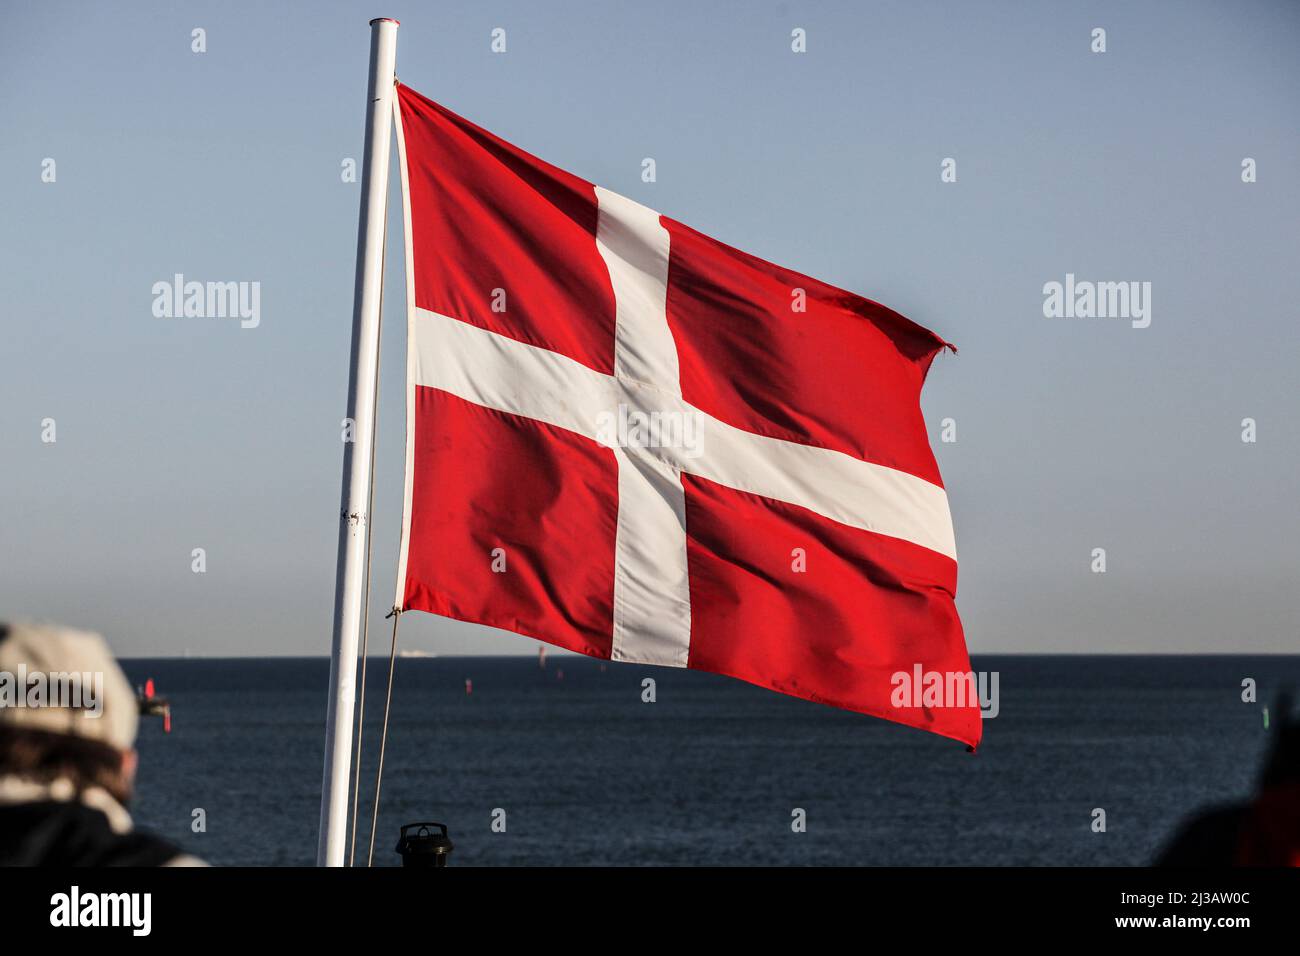 Die Flagge Dänemarks ist die offizielle dänische Nationalflagge. Sie wird Dannebrog oder Danebrog genannt, was in dänischer Sprache Flagge der Dänen b Stock Photo